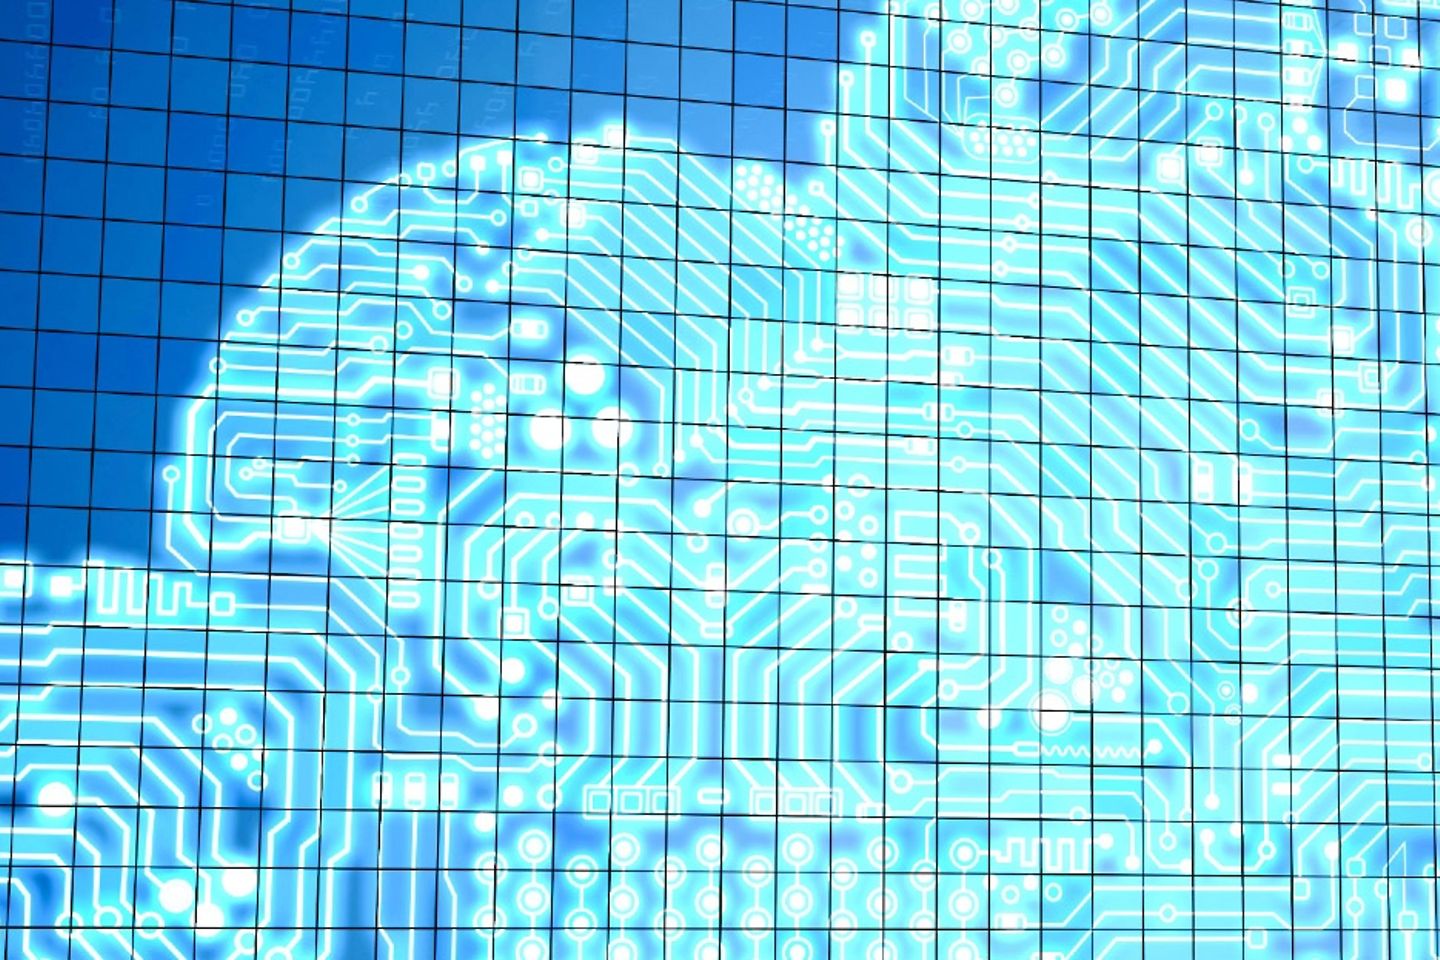 Virtuele afbeelding van een cloud, omgeven met binaire codes.